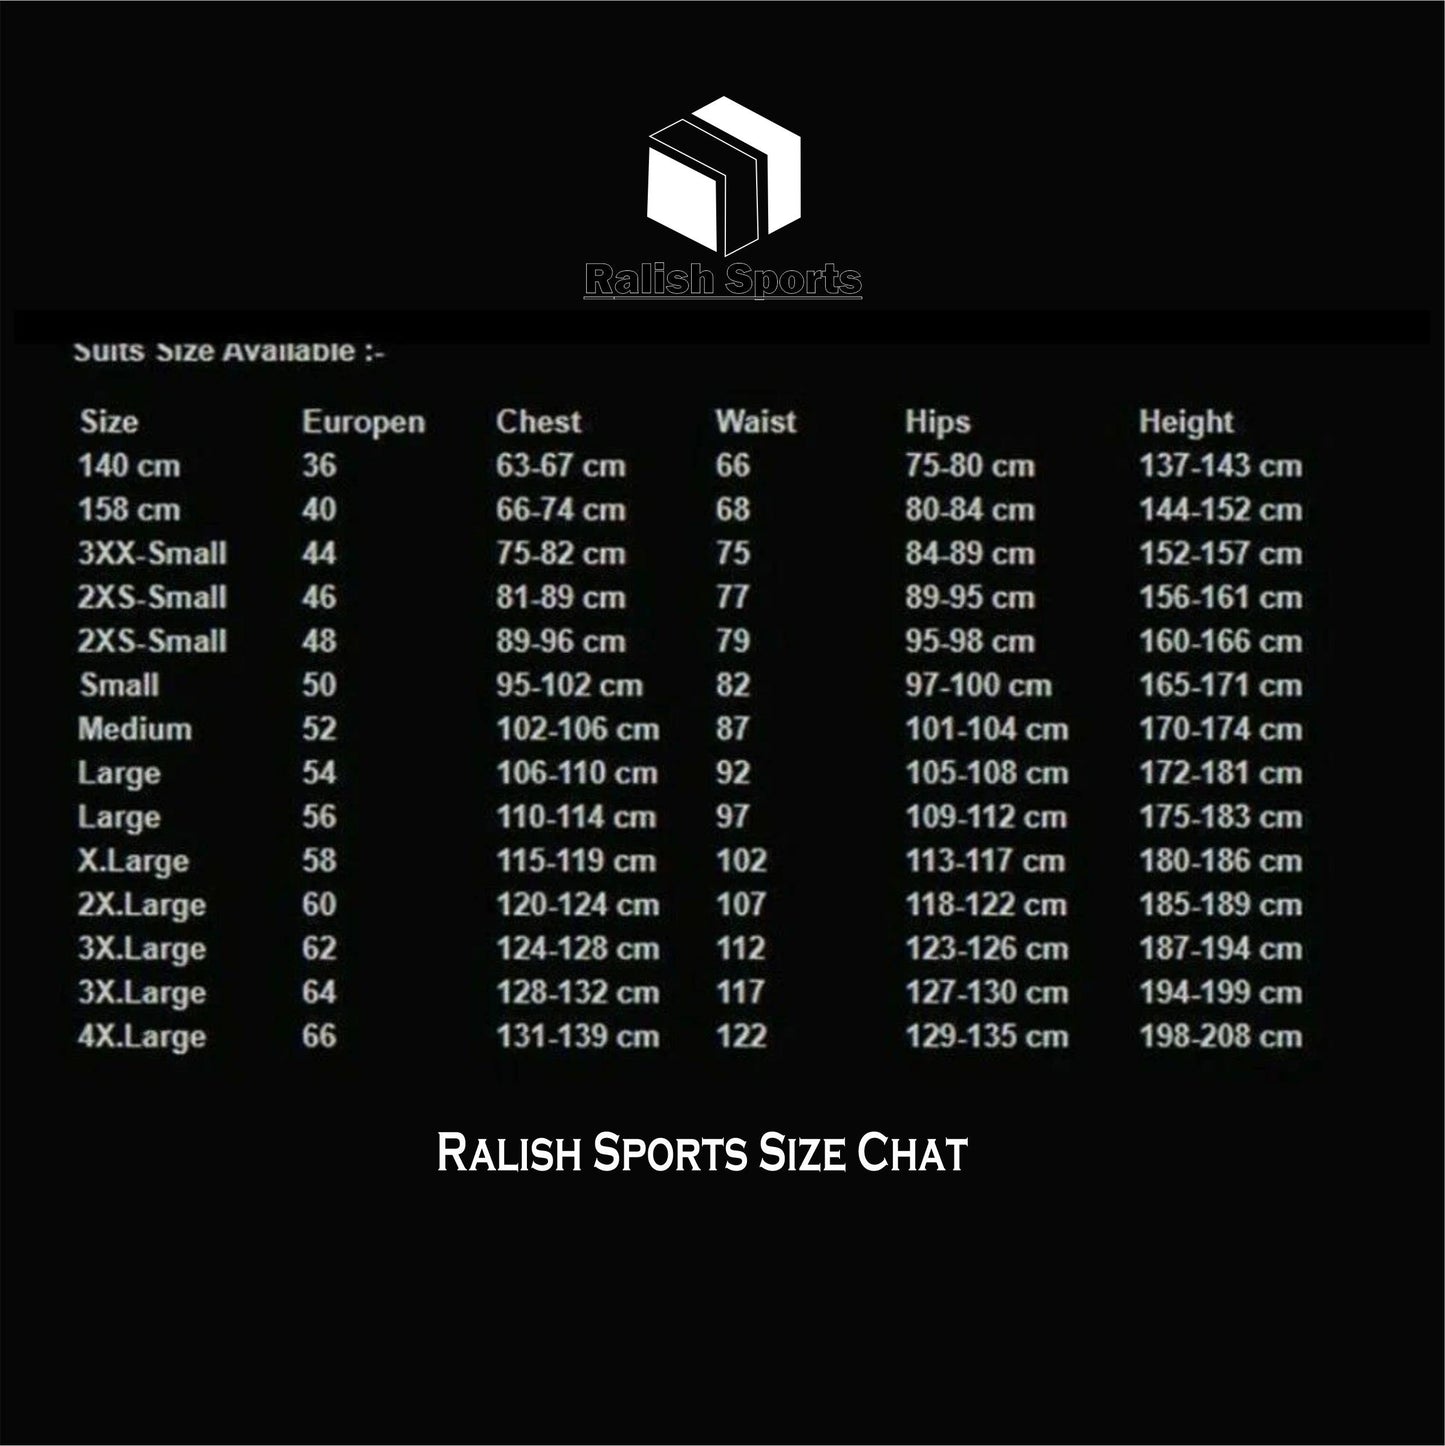 Esteban Ocon f1 Racing Suit 2018 - Ralish Sports